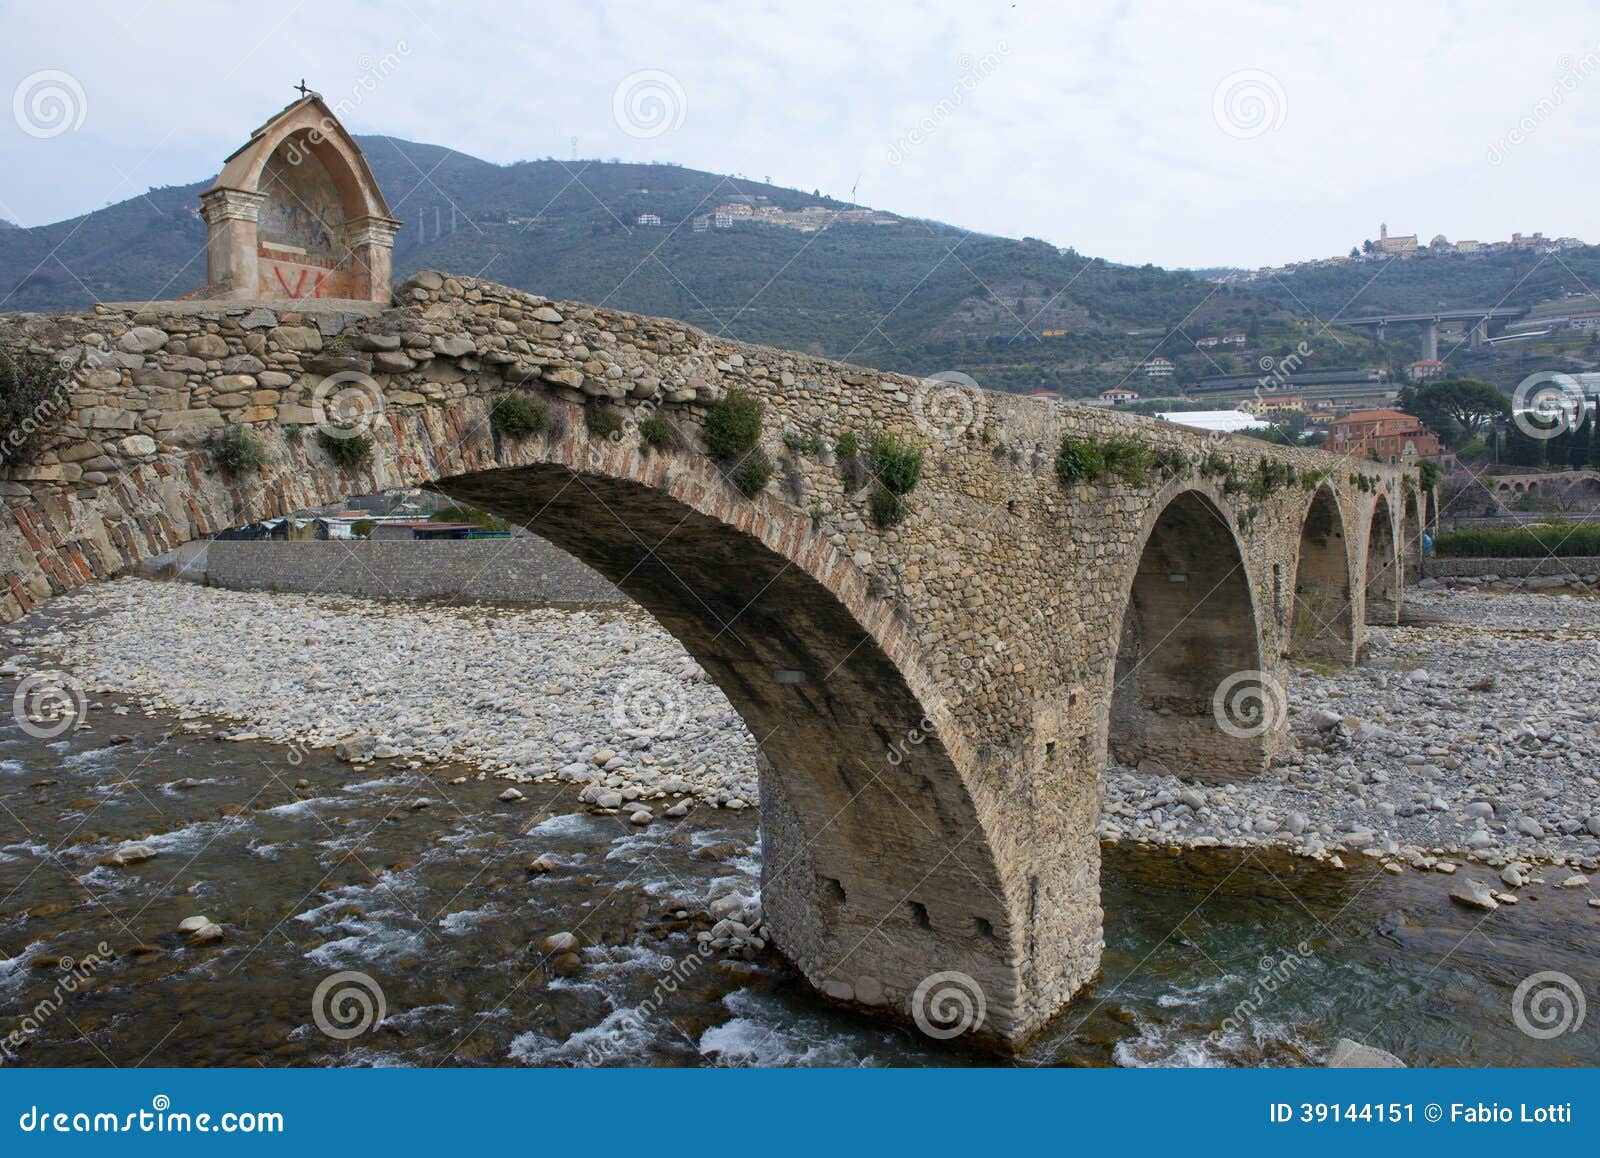 roman stone bridge in taggia